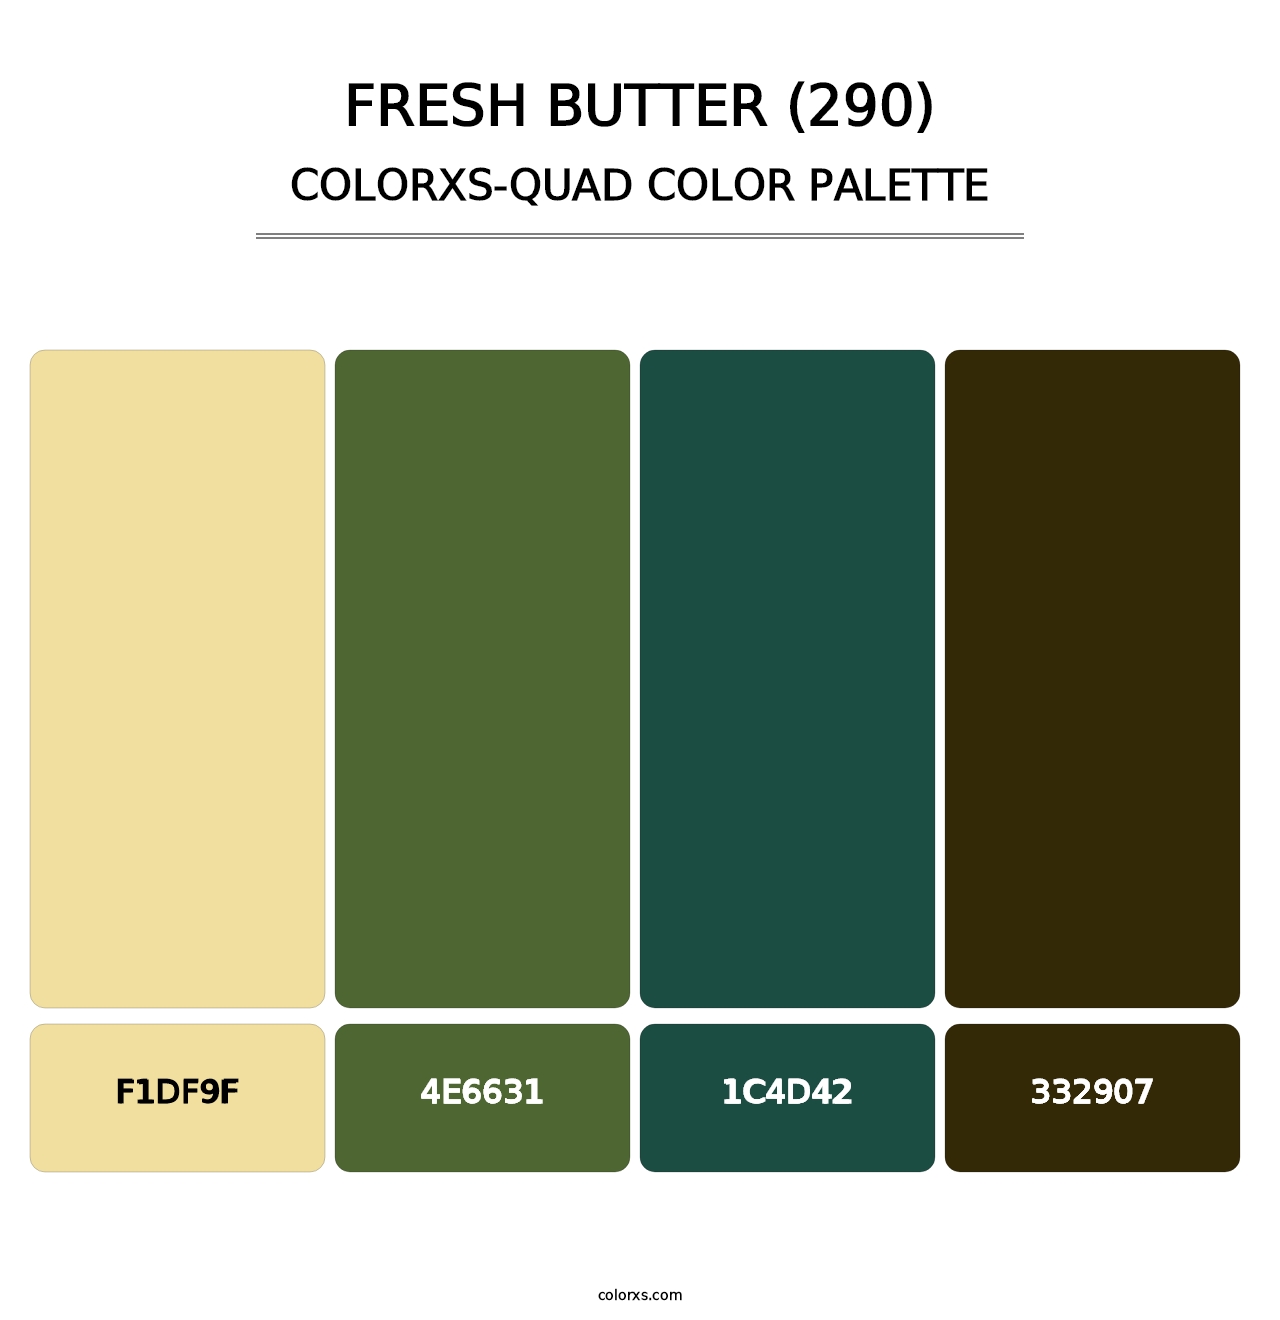 Fresh Butter (290) - Colorxs Quad Palette